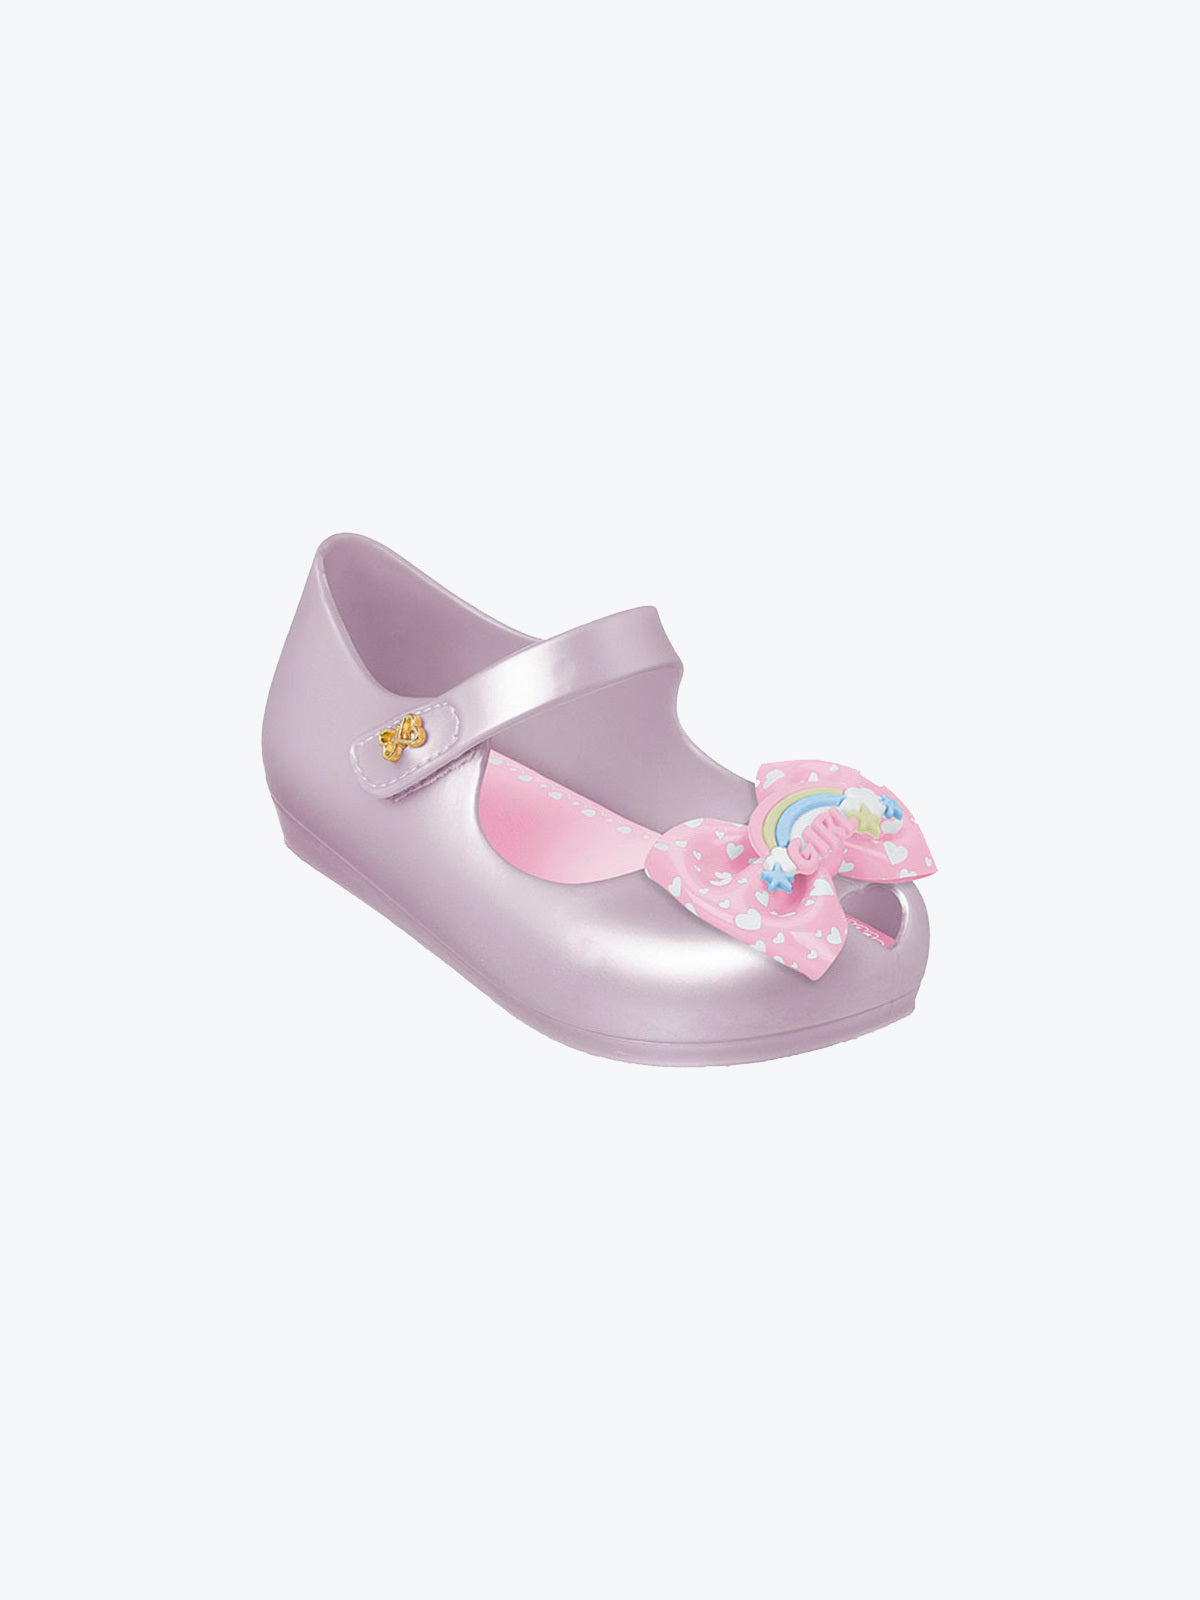 נעלי בלרינה SAPATILHA ANGEL / תינוקות- World Colors|וורלד קולורס